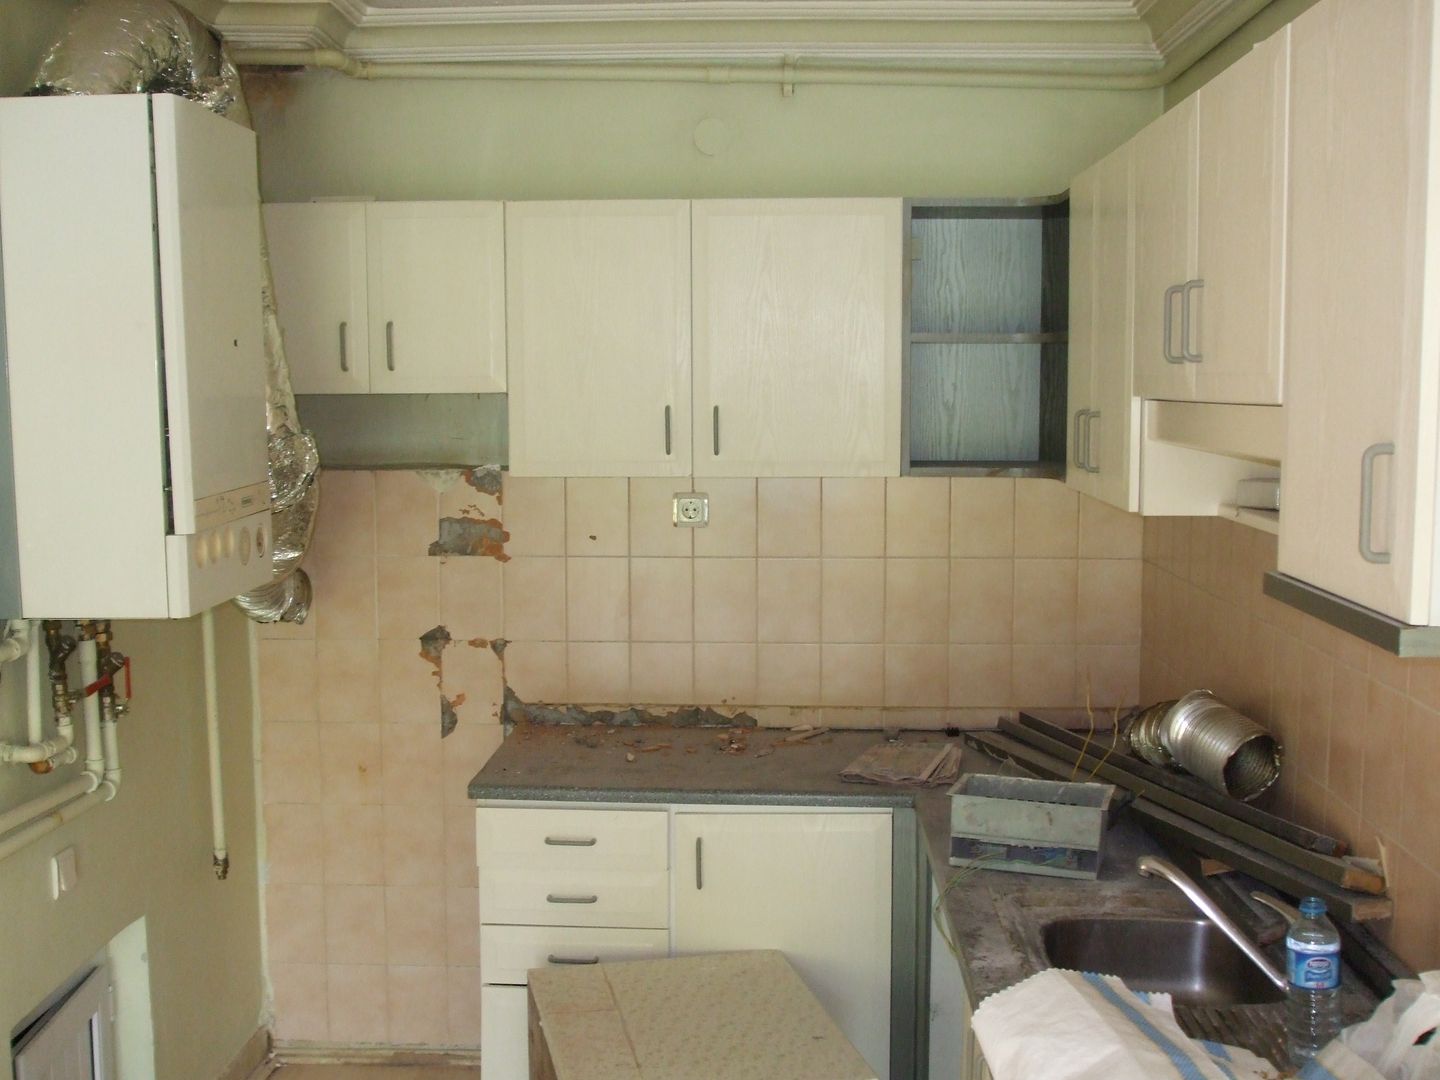 VİLLA RENOVASYON PROJESİ-ANKARA, PLAN B PLAN B Classic style kitchen